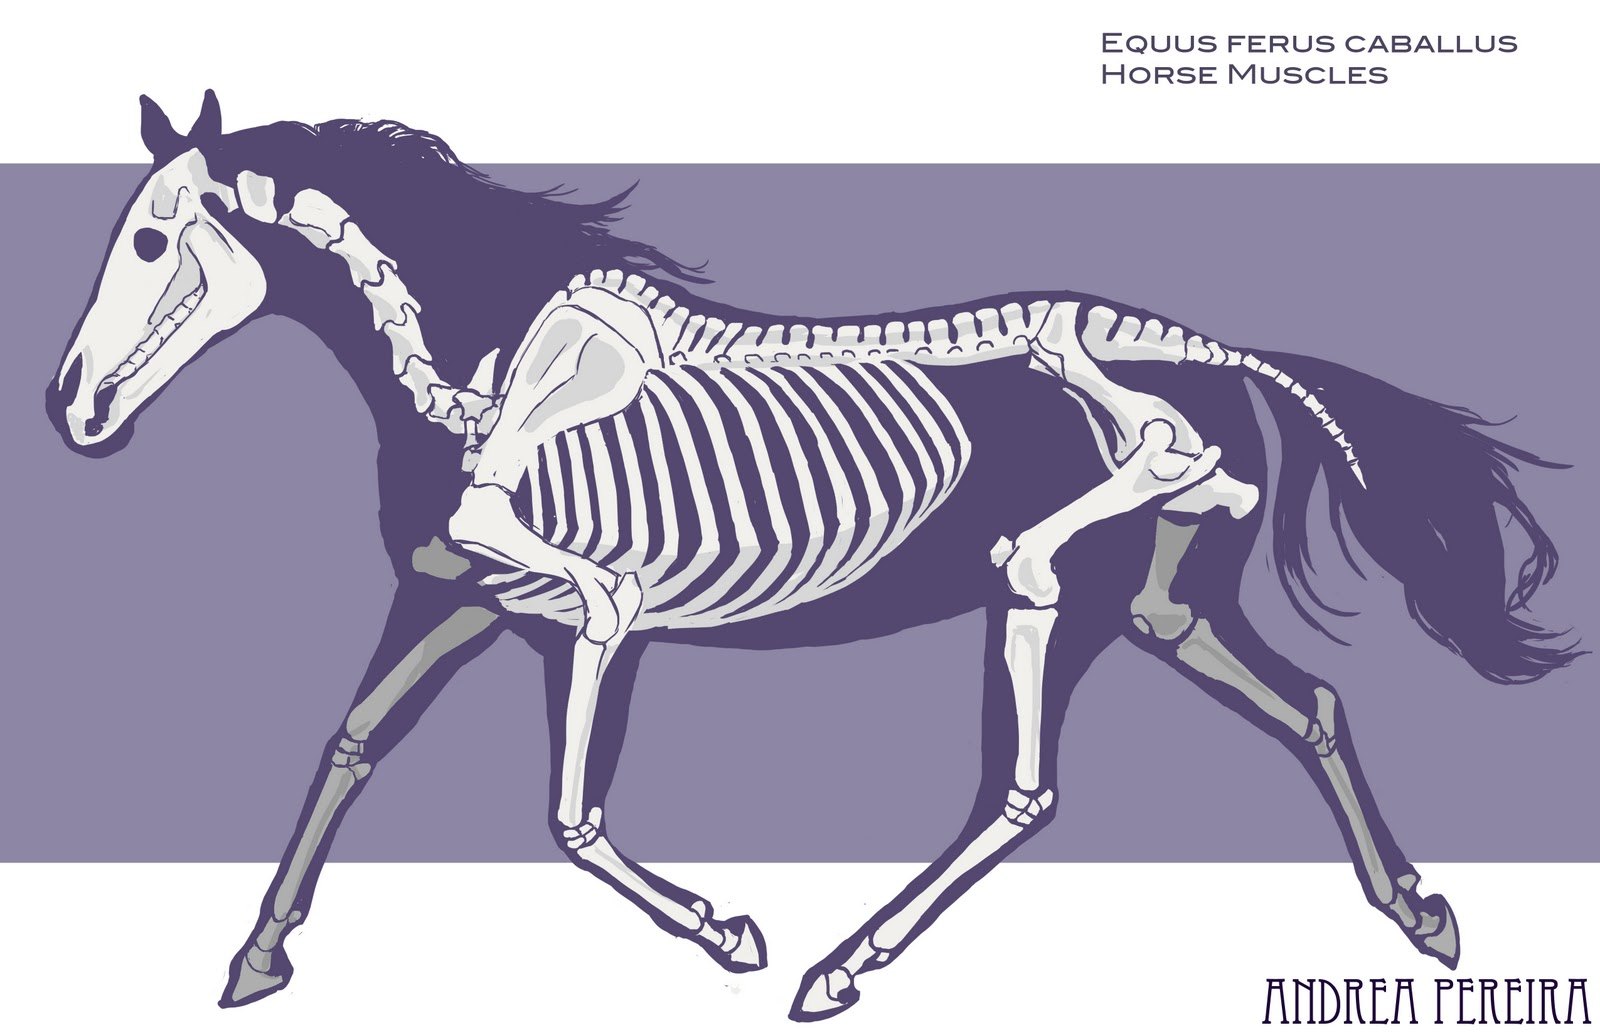 Референс лошади и ее скелет